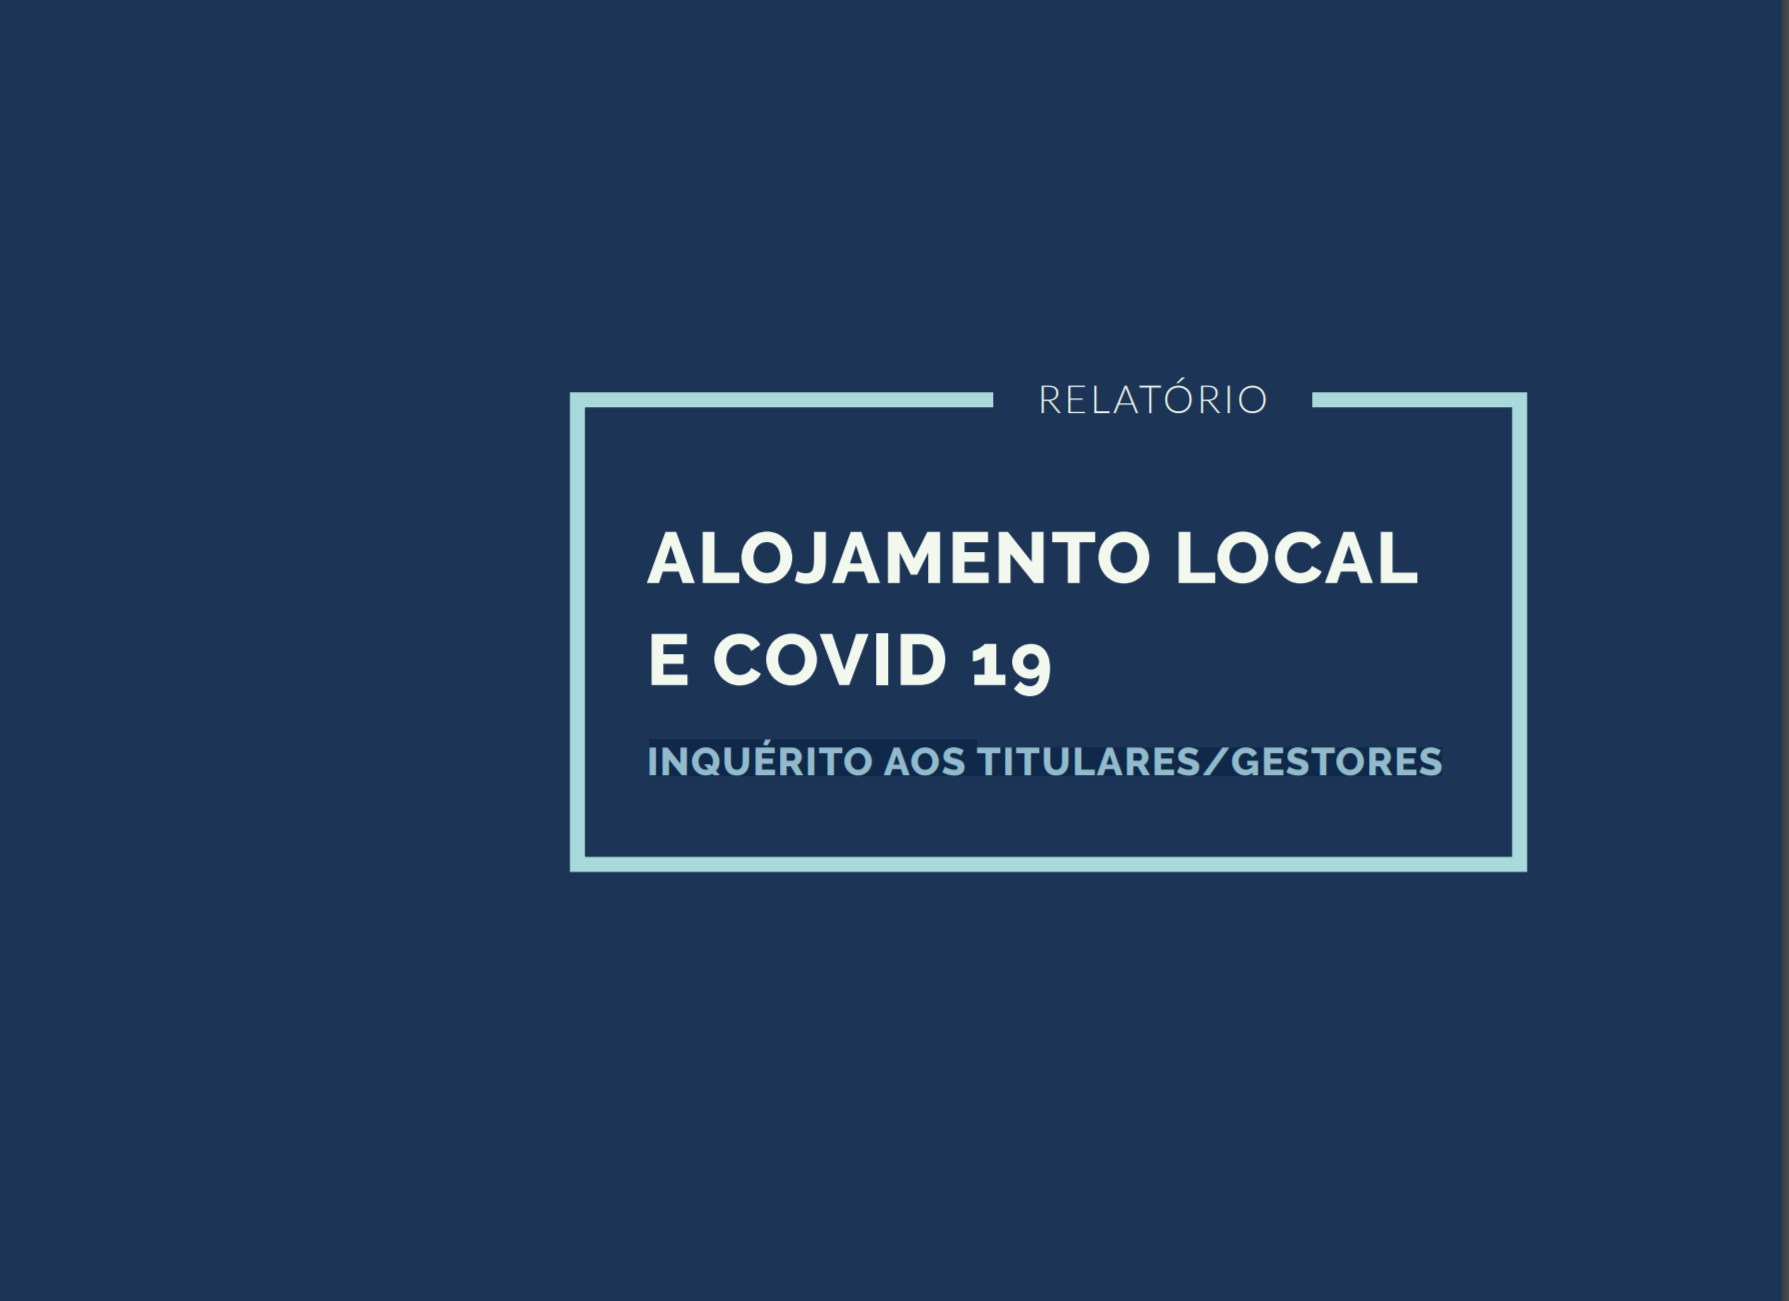 Alojamento Local e Covid-19